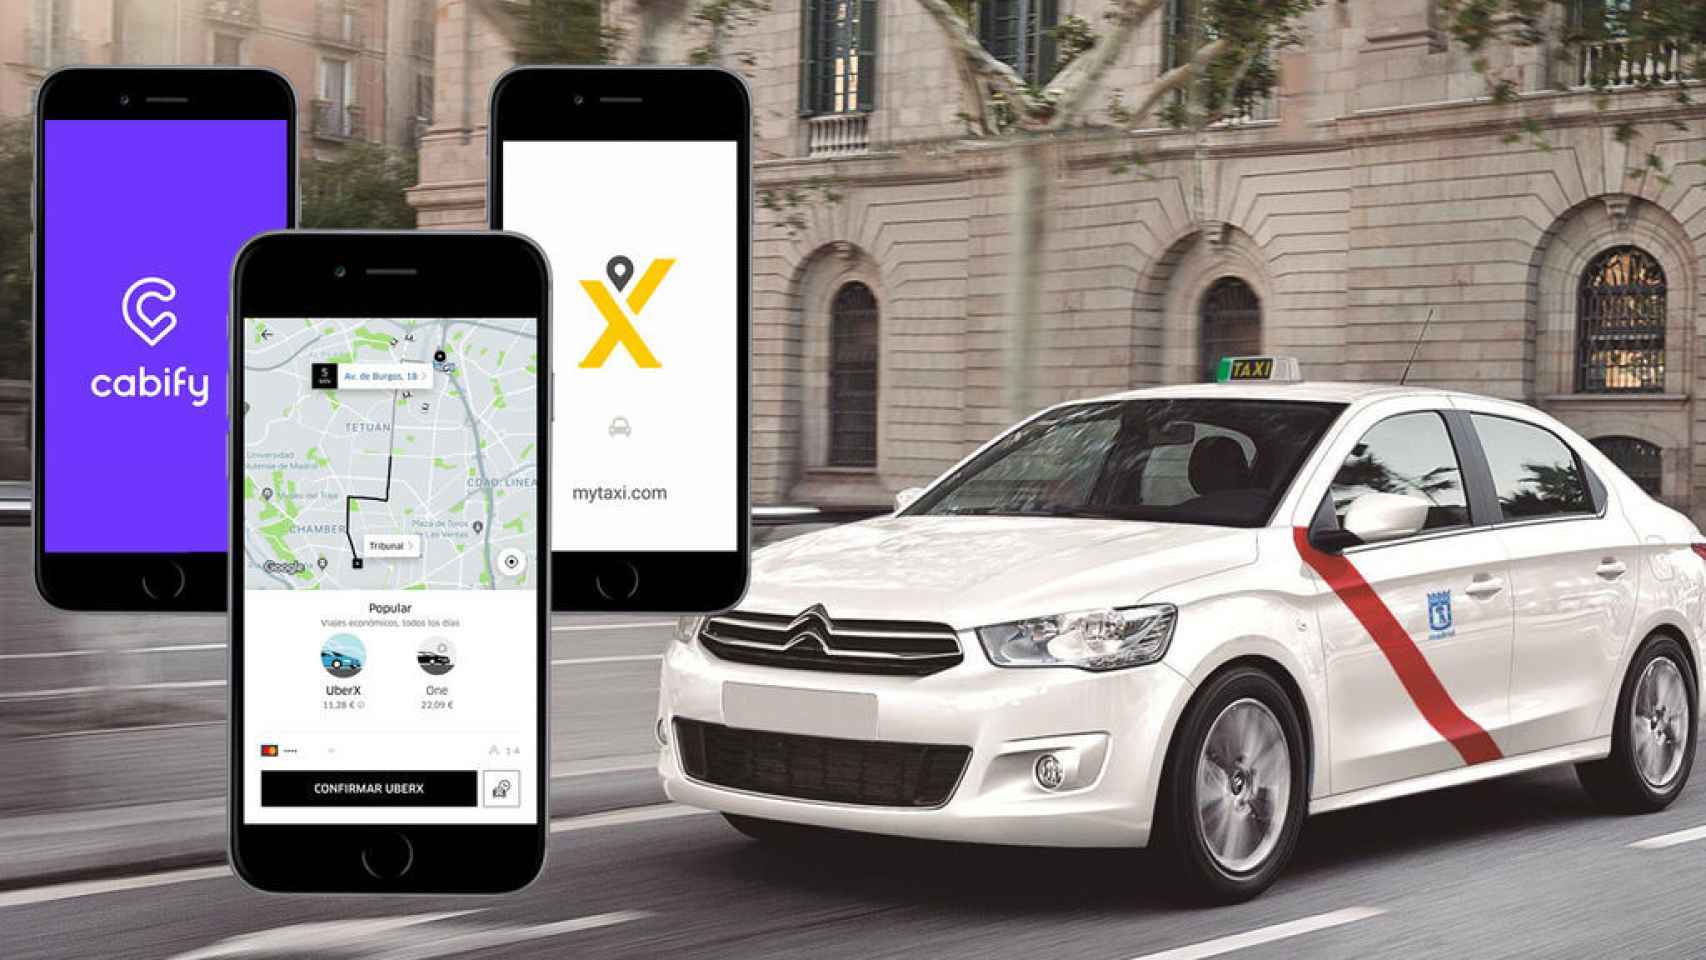 Montaje con la imagen de todos los servicios que existen: Uber, Cabify y Taxi.